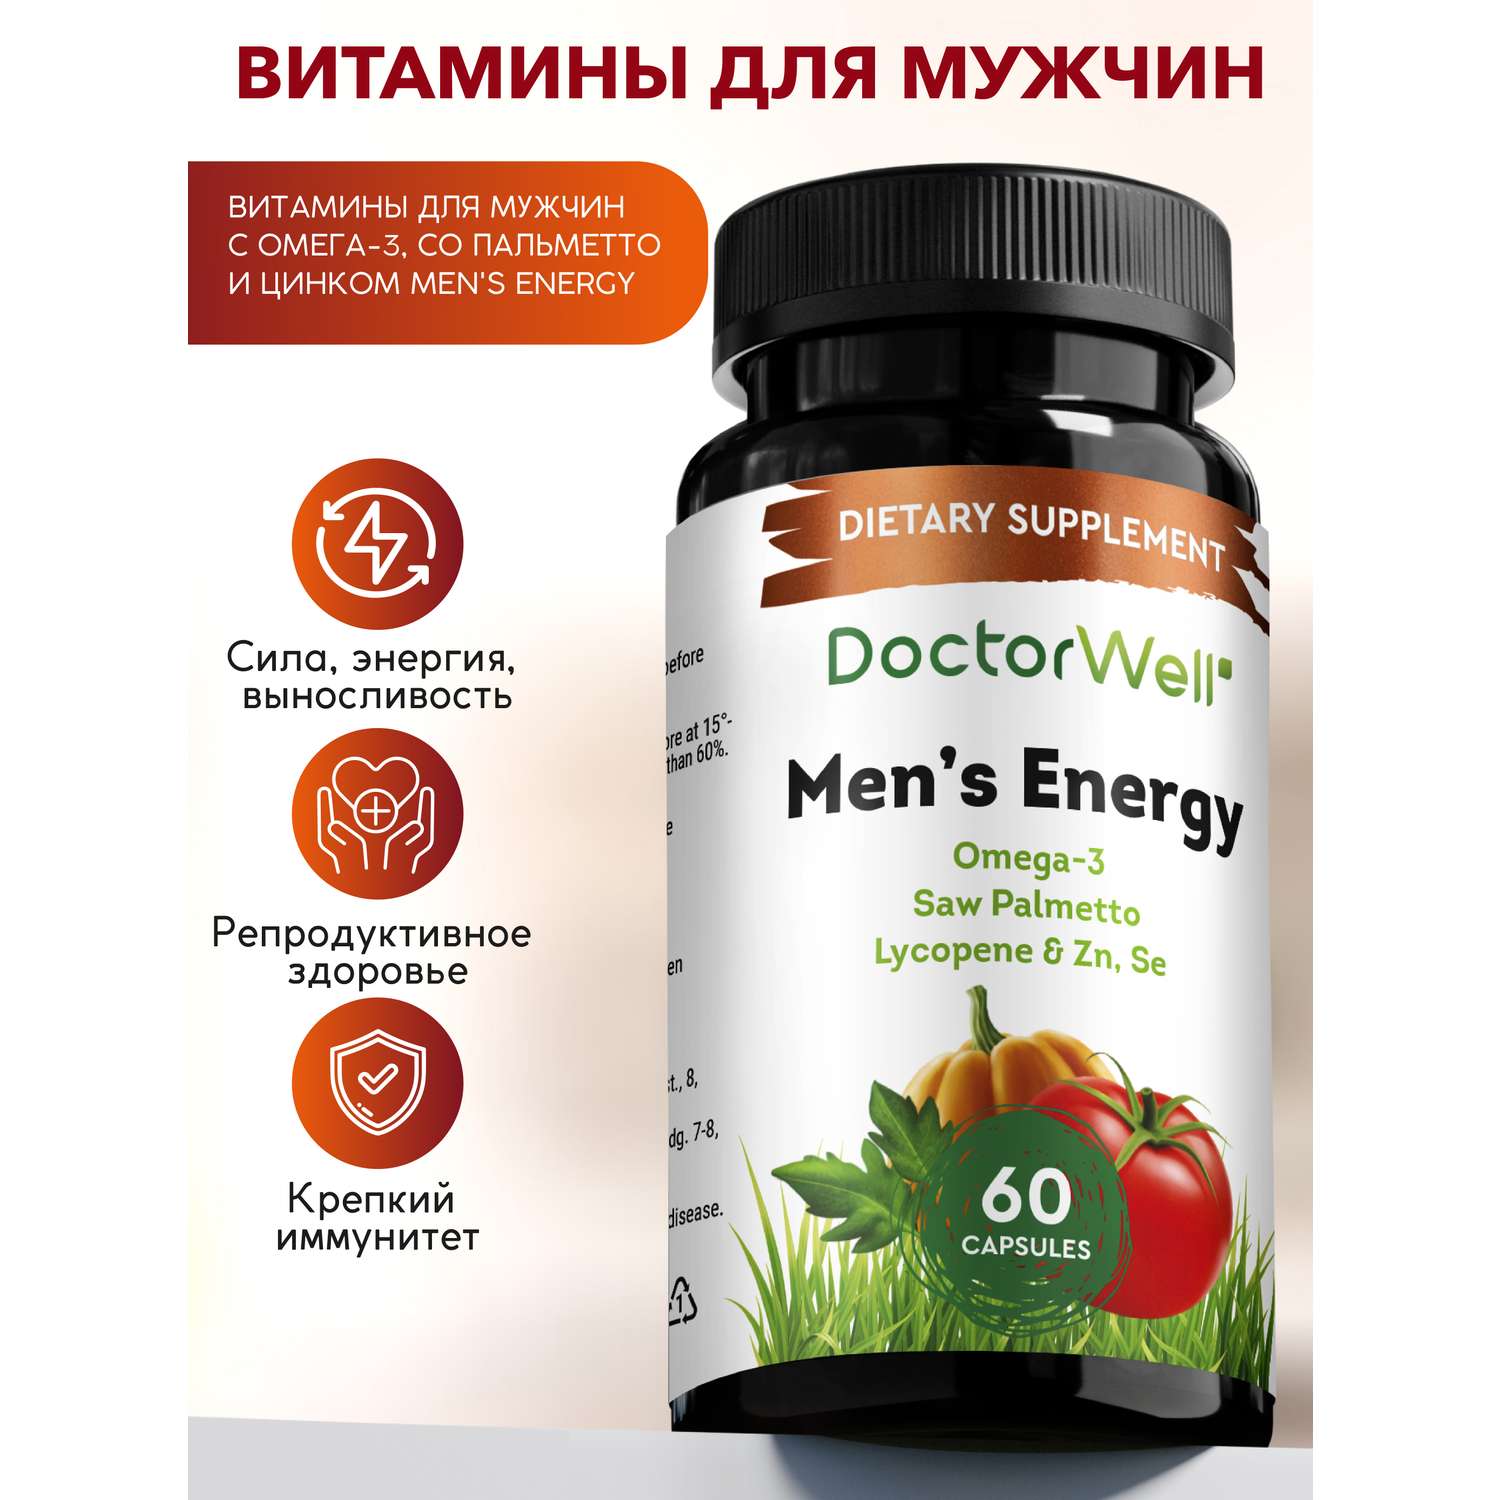 Витамины DoctorWell Mens Energy для мужского здоровья с Омега 3 Ликопином и Со Пальметто 60 шт - фото 1